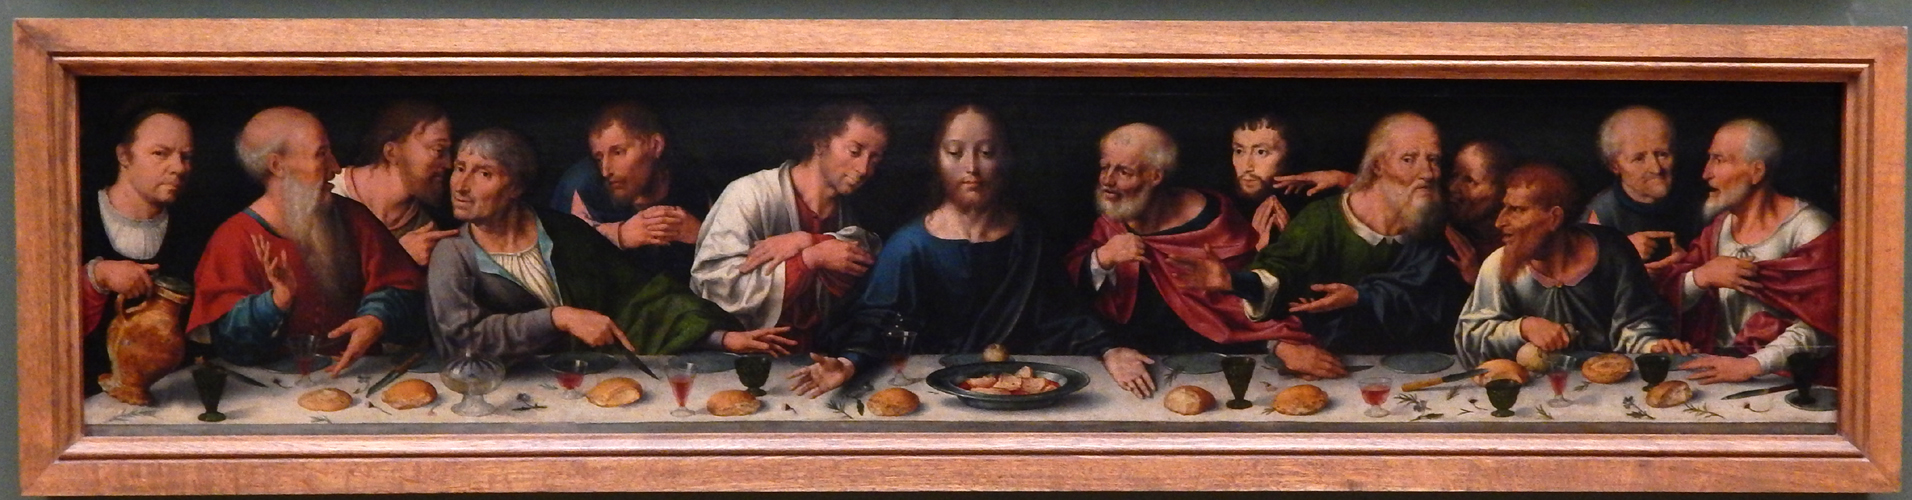 Van Cleve, Last Supper, Louvre, Paris